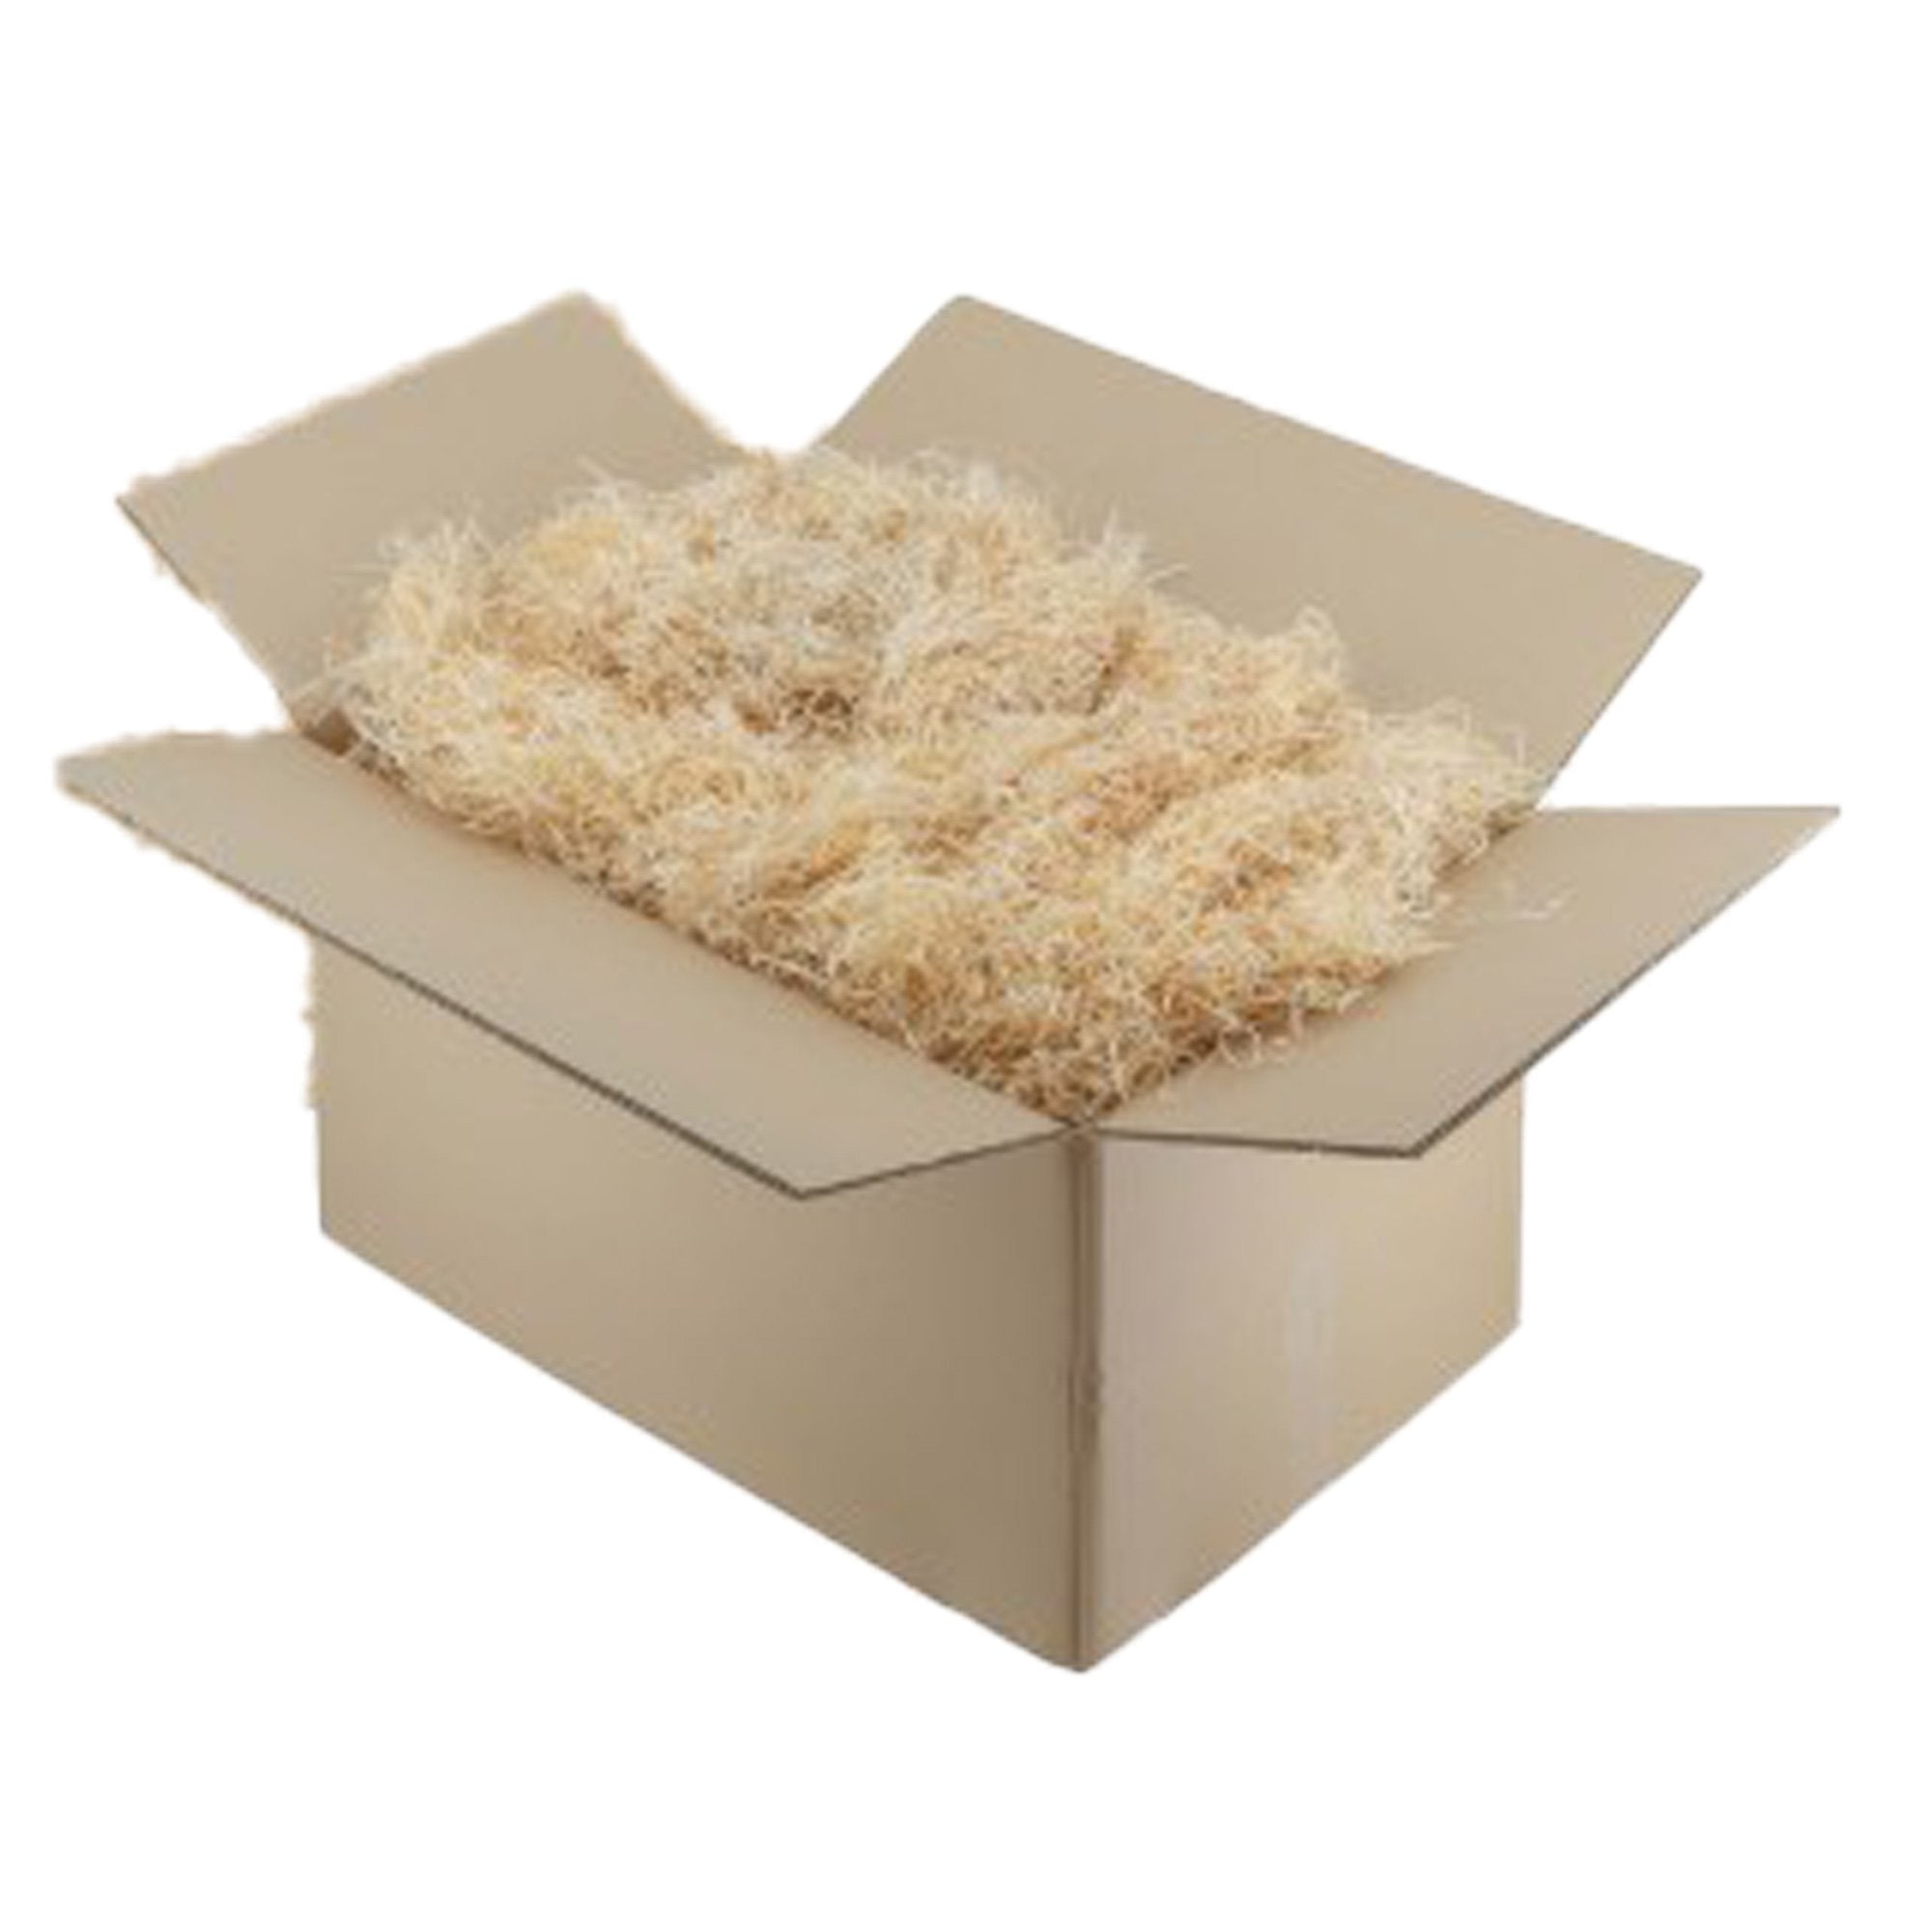 polyedra-scatola-trucciolo-imballaggio-legno-color-paglia-1kg